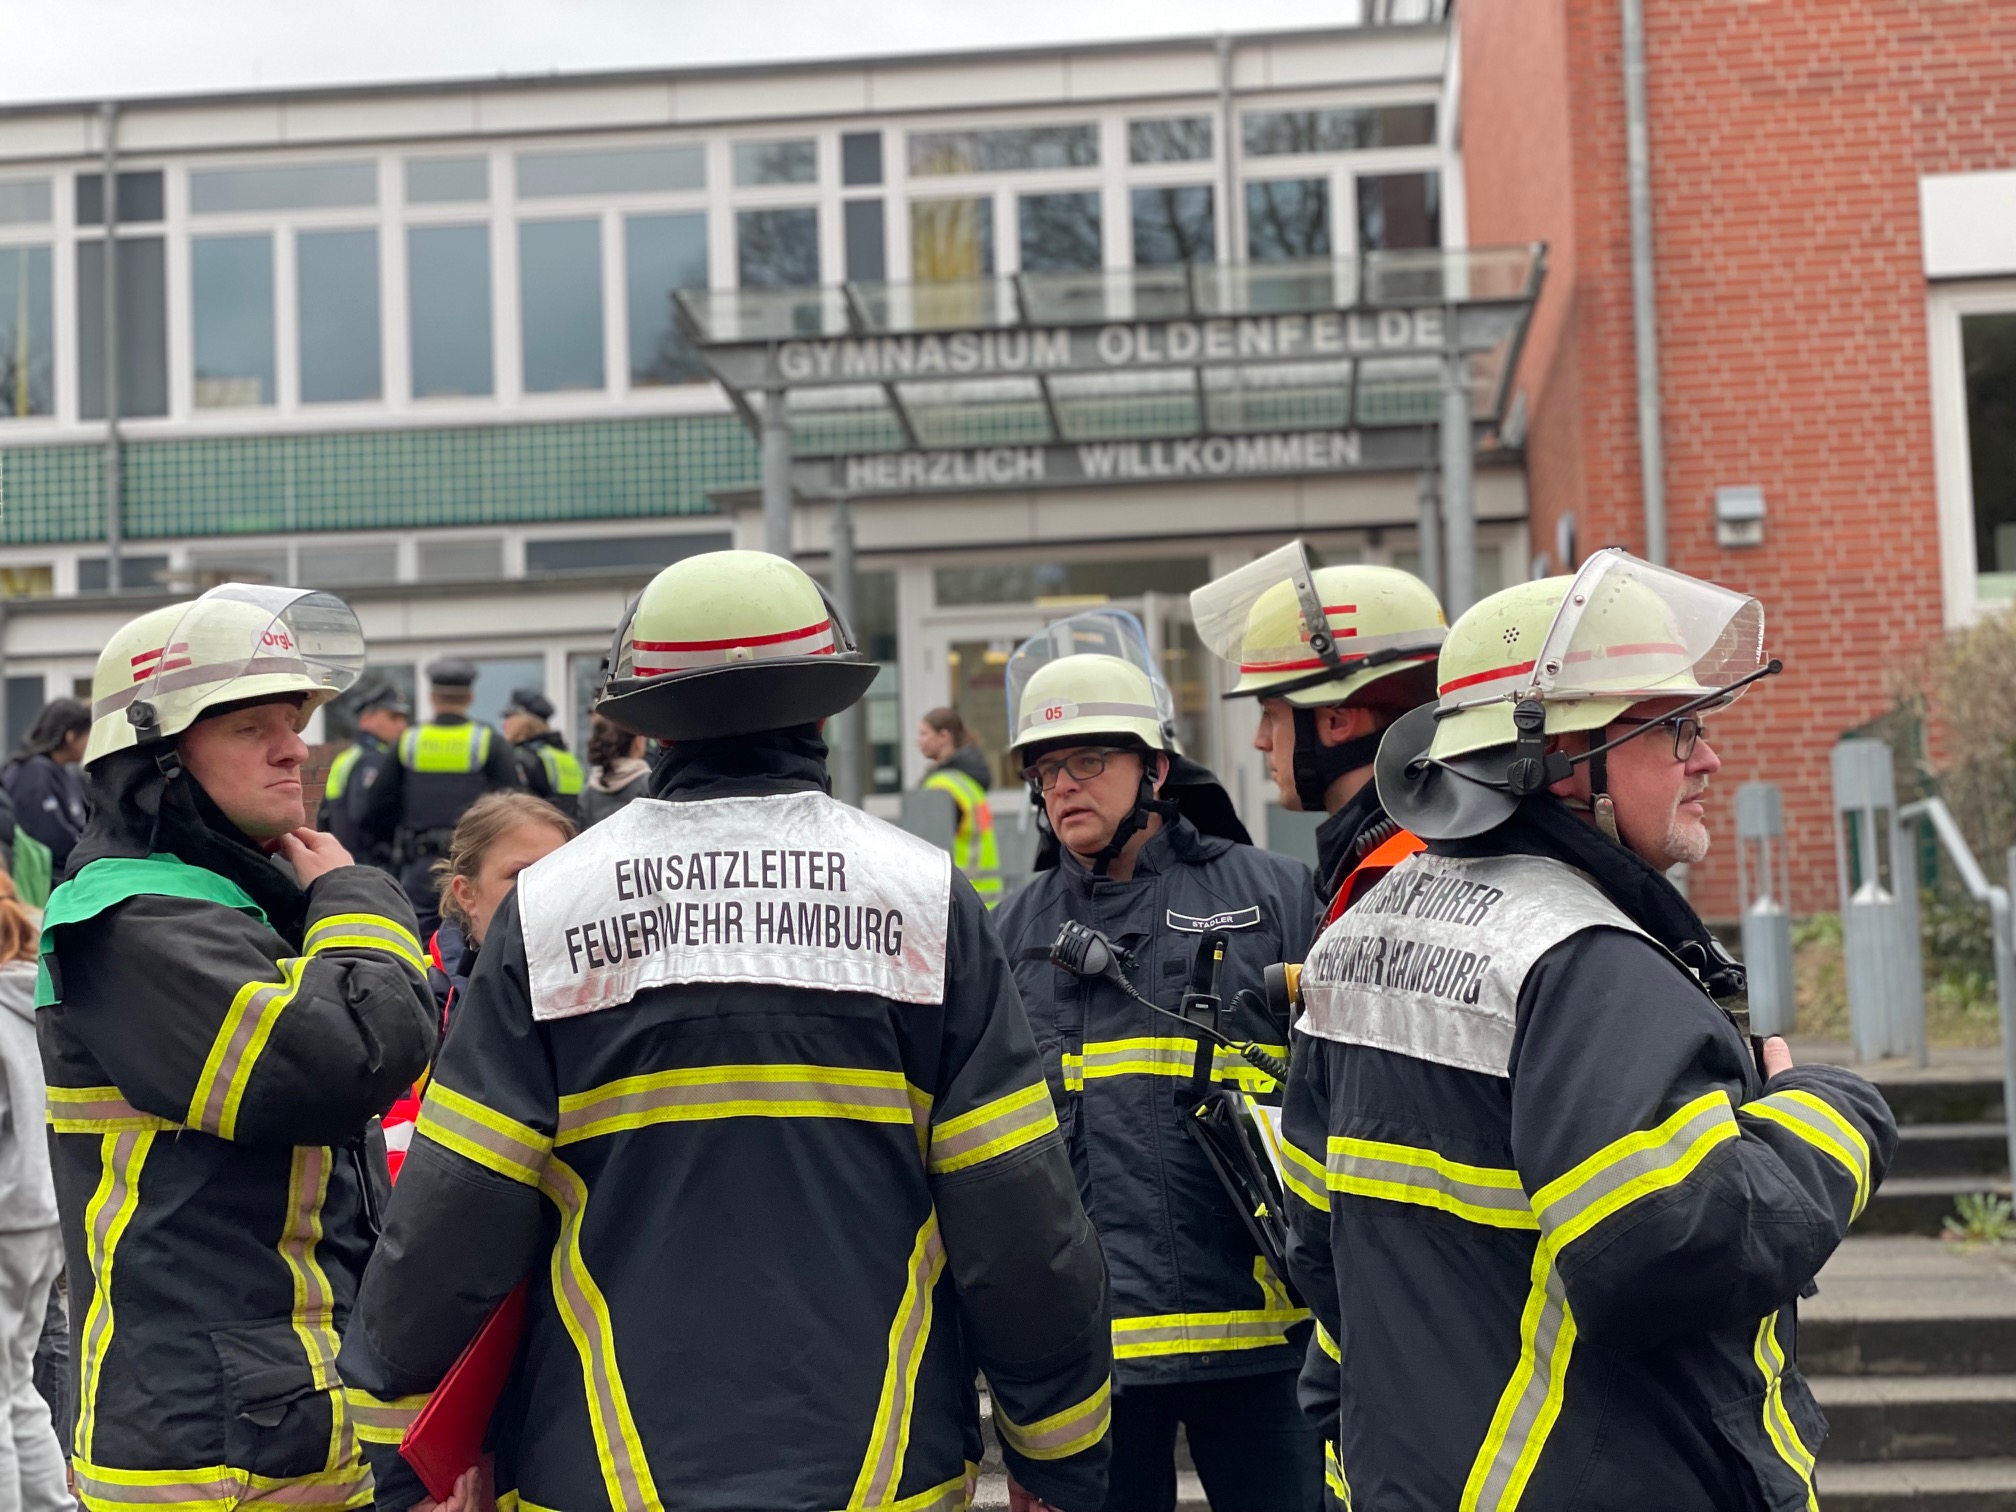 Reizgas an Schule versprüht – Feuerwehr versorgt 17 Betroffene